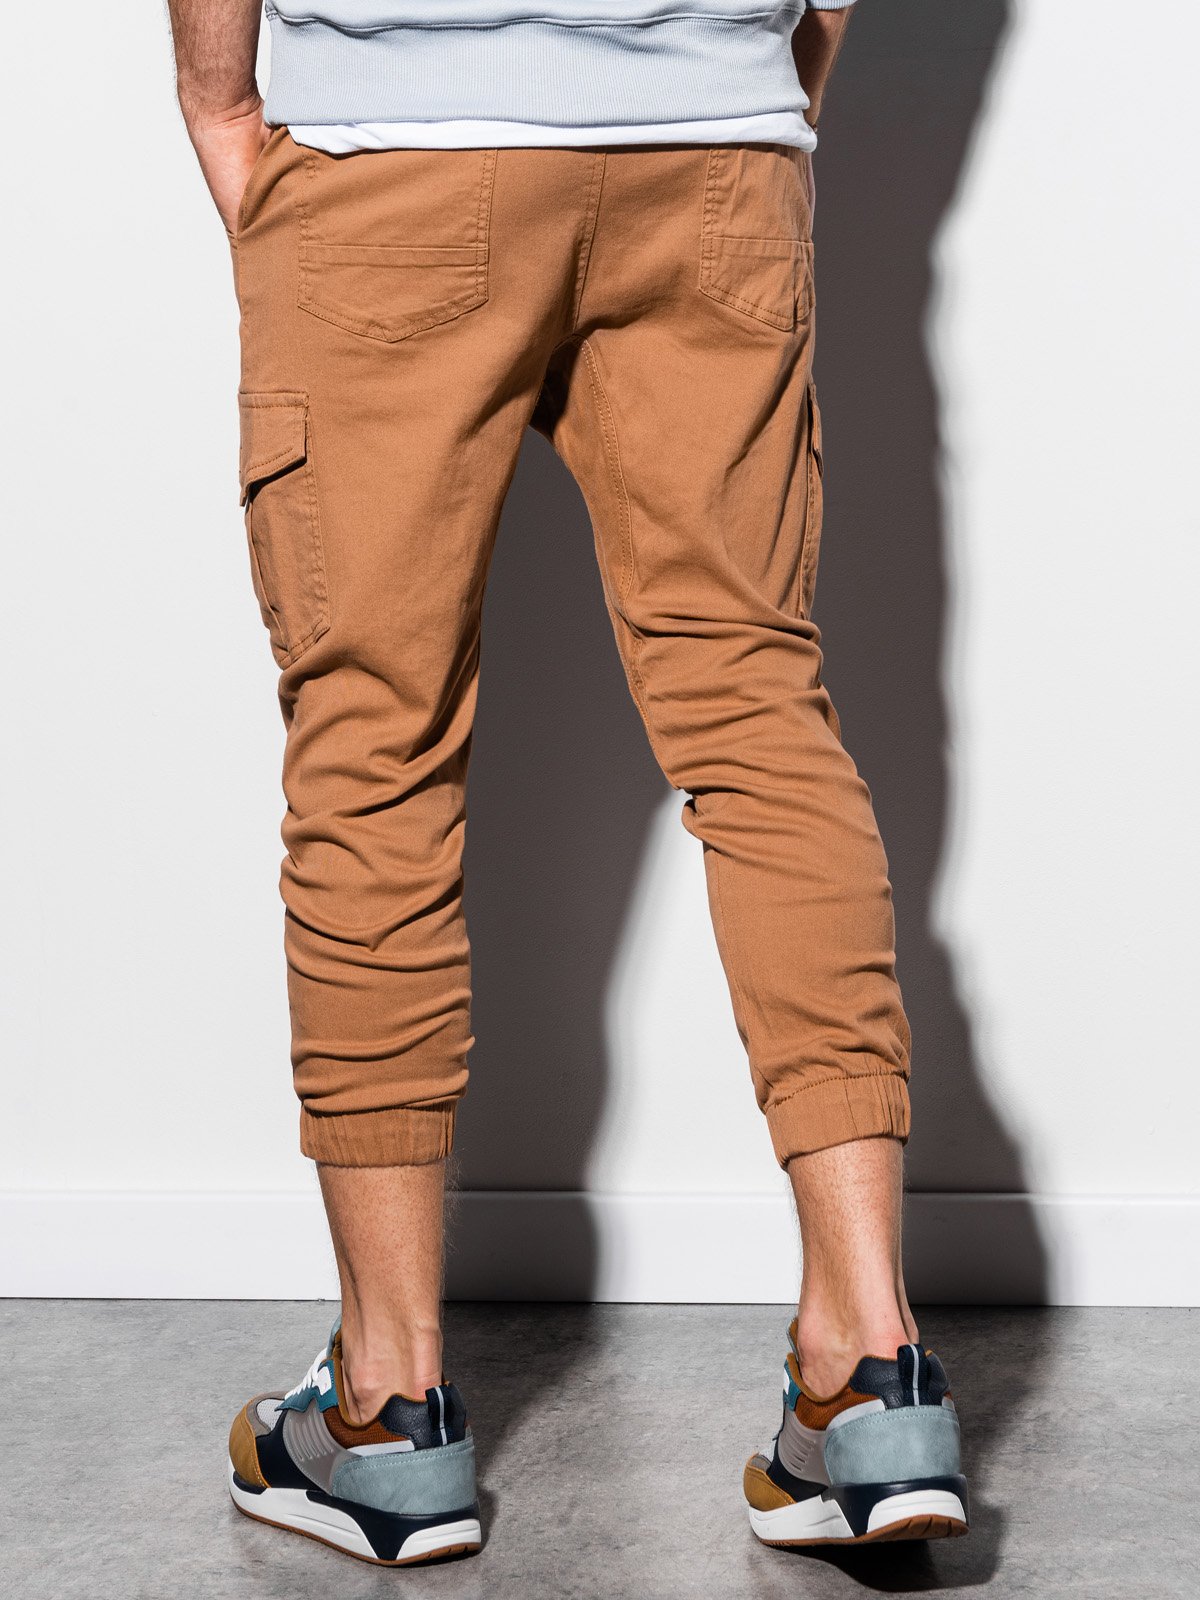 Men's pants joggers P761 - beige | MODONE wholesale - Clothing For Men